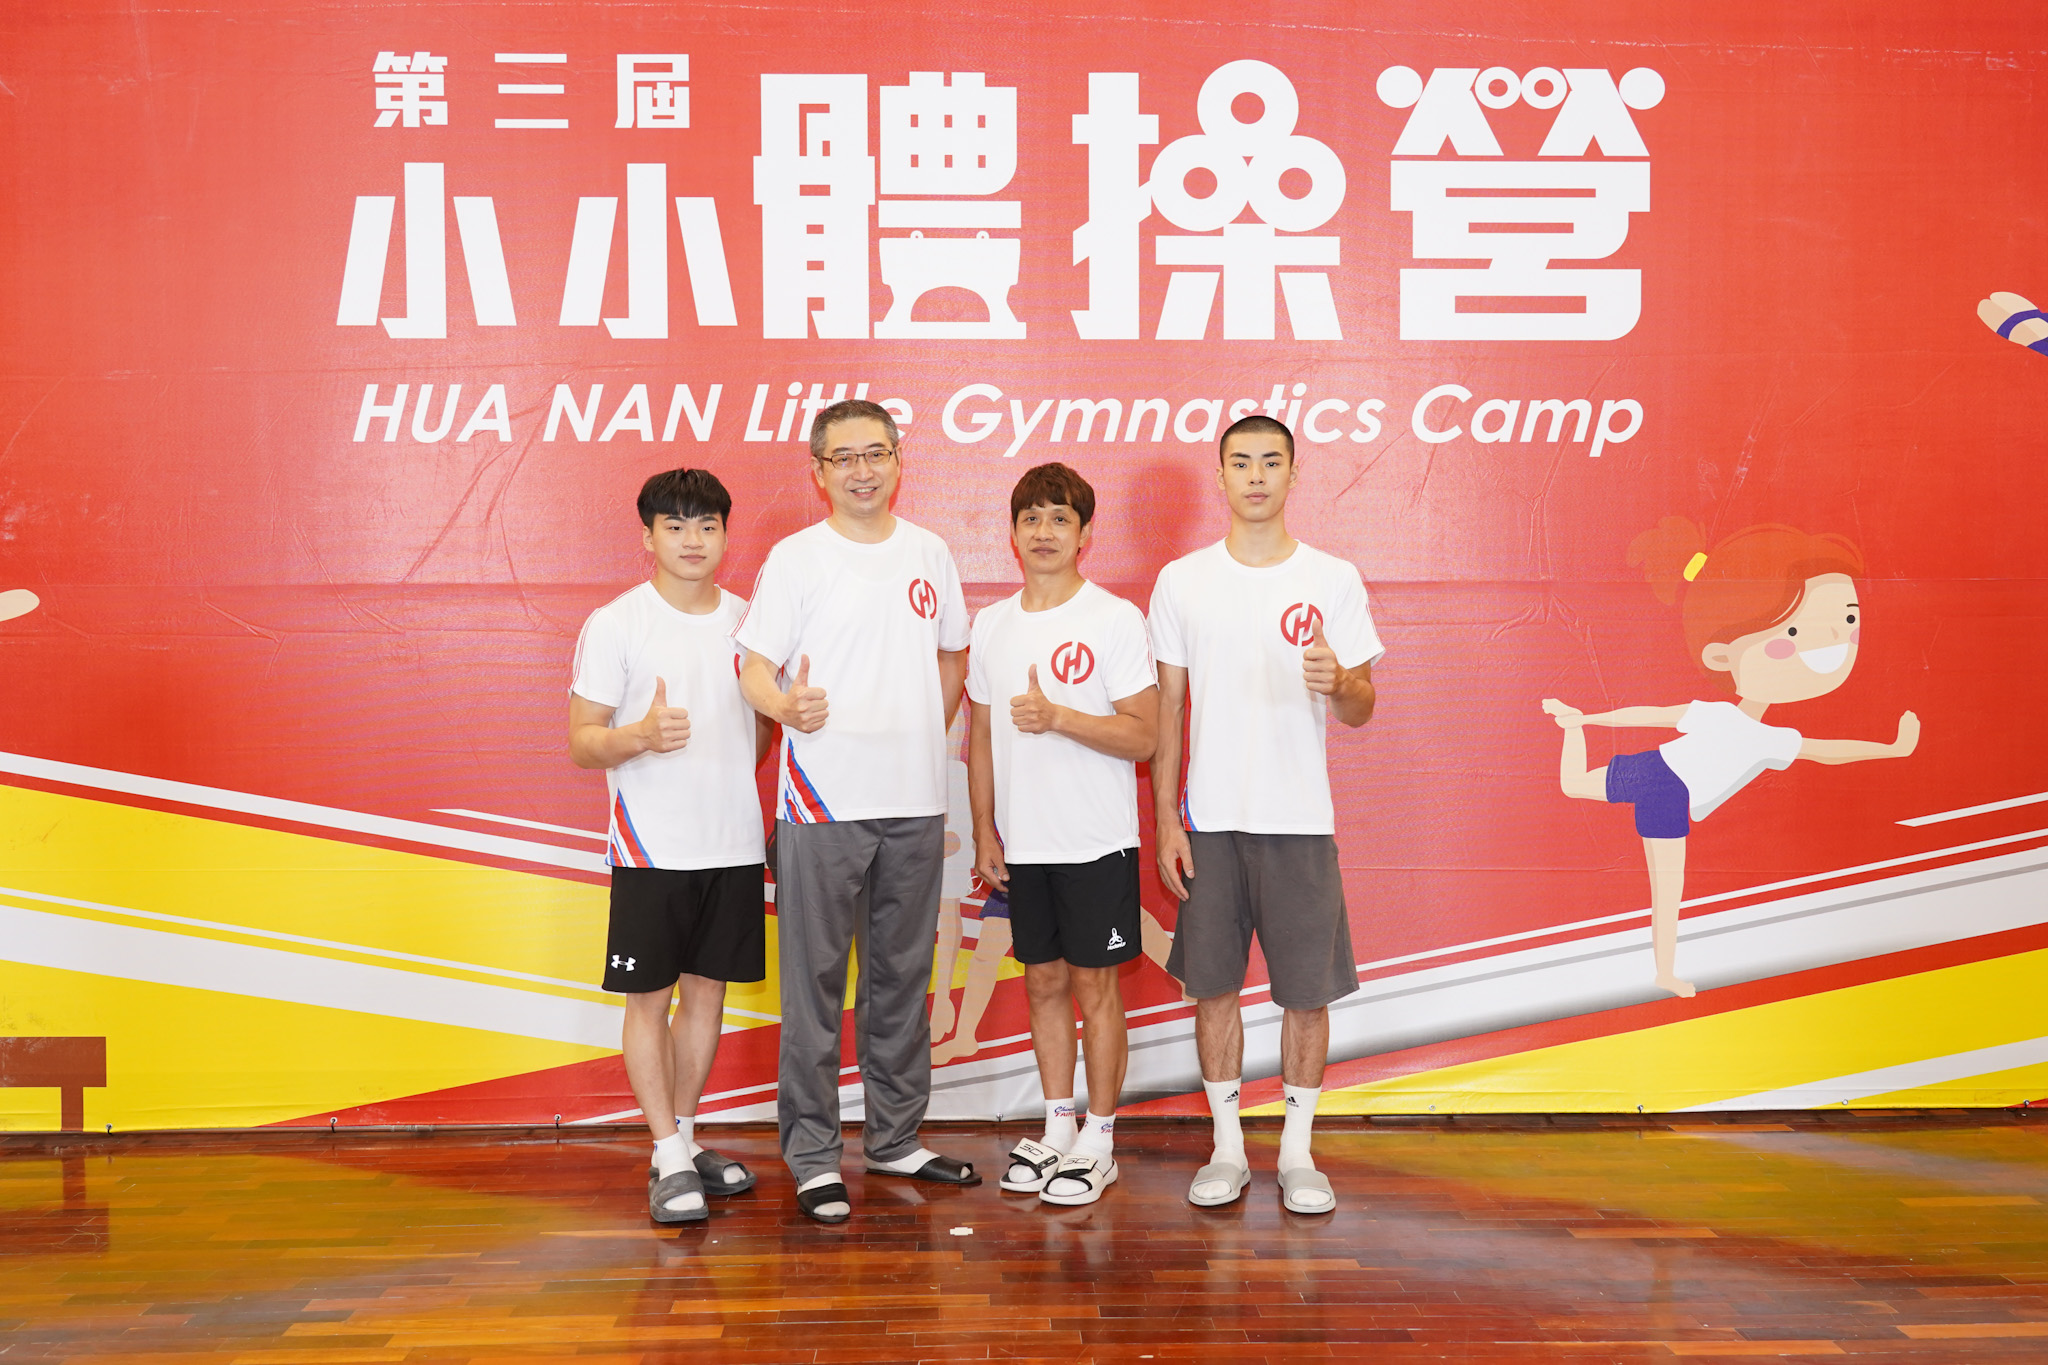 華南金控贊助選手莊佳龍(左起)、華南銀行北一區通路管理中心協理卓右翔和國家體操中心林育信。官方提供